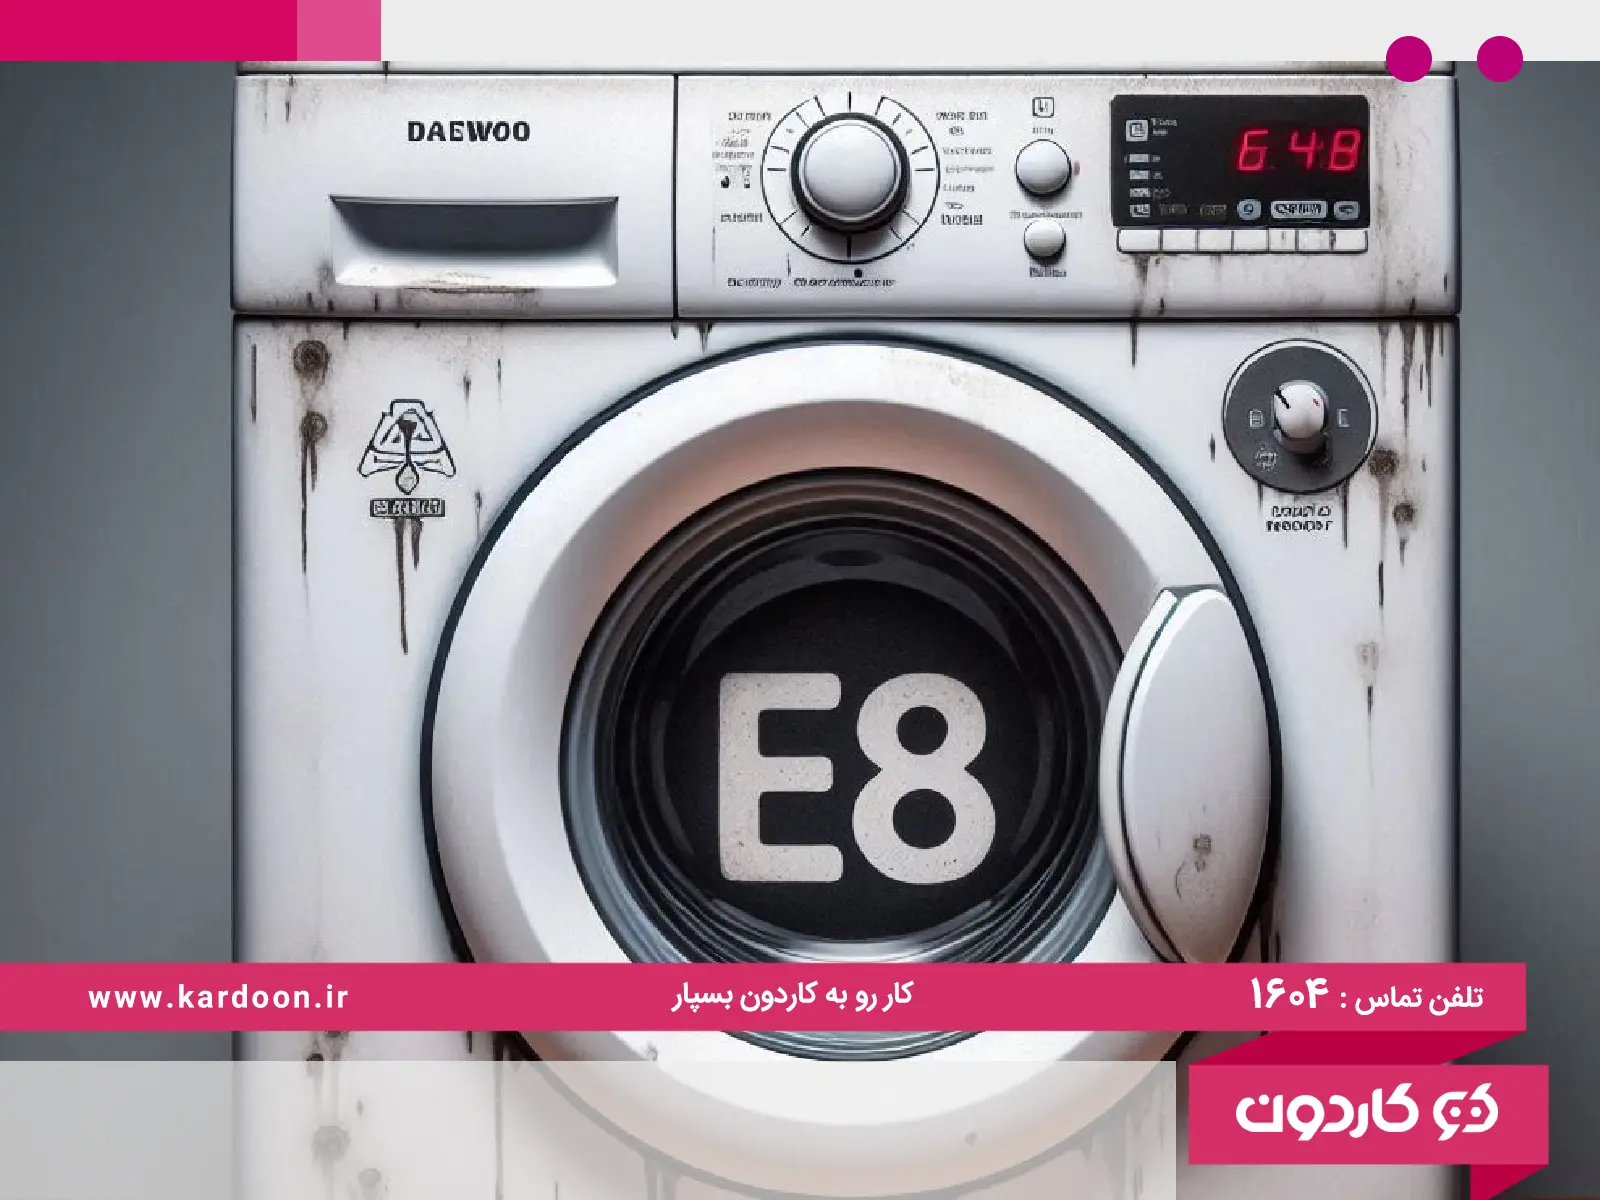 Daewoo washing machine error e8